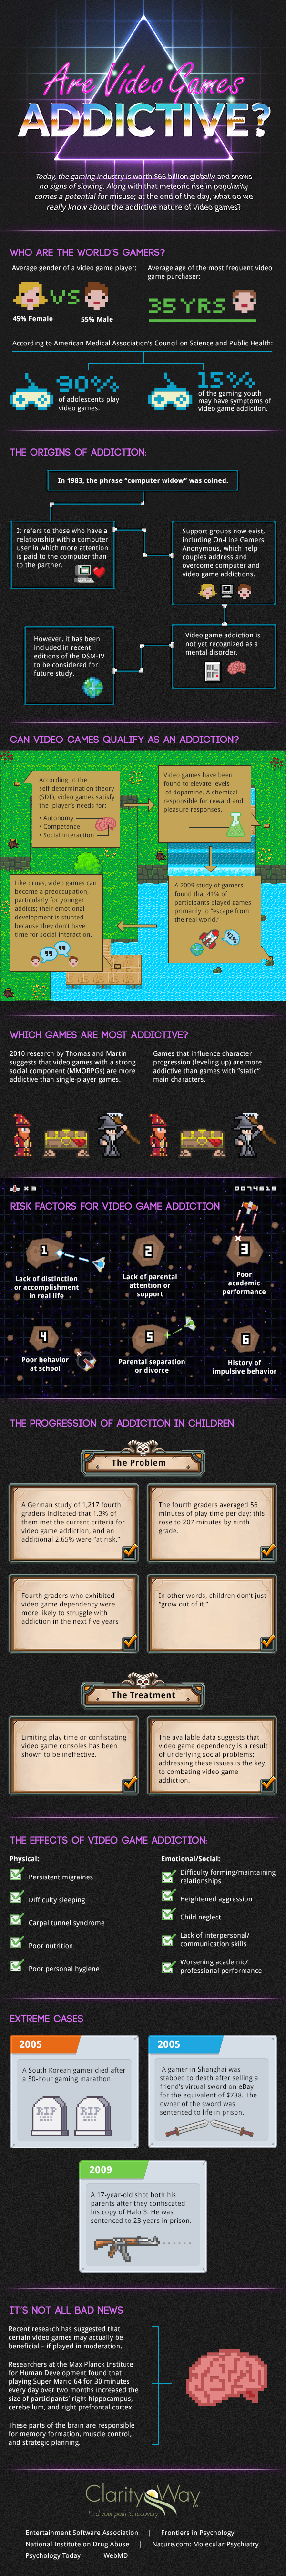 Are Video Games Addictive?